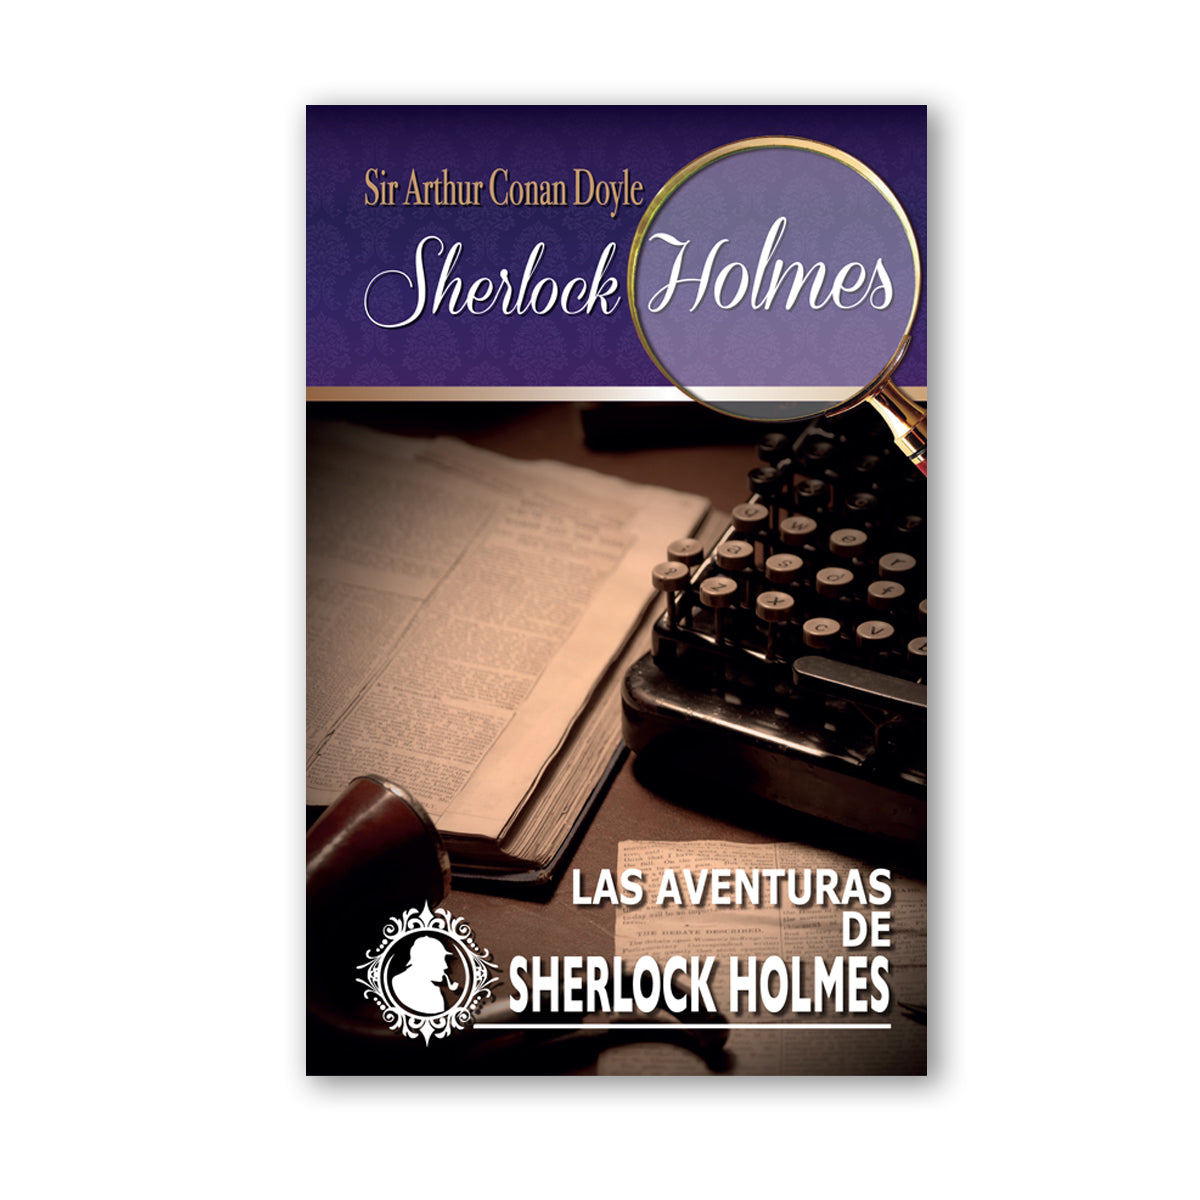 Colección Sherlock Holmes "Las Aventuras de Sherlock Holmes"